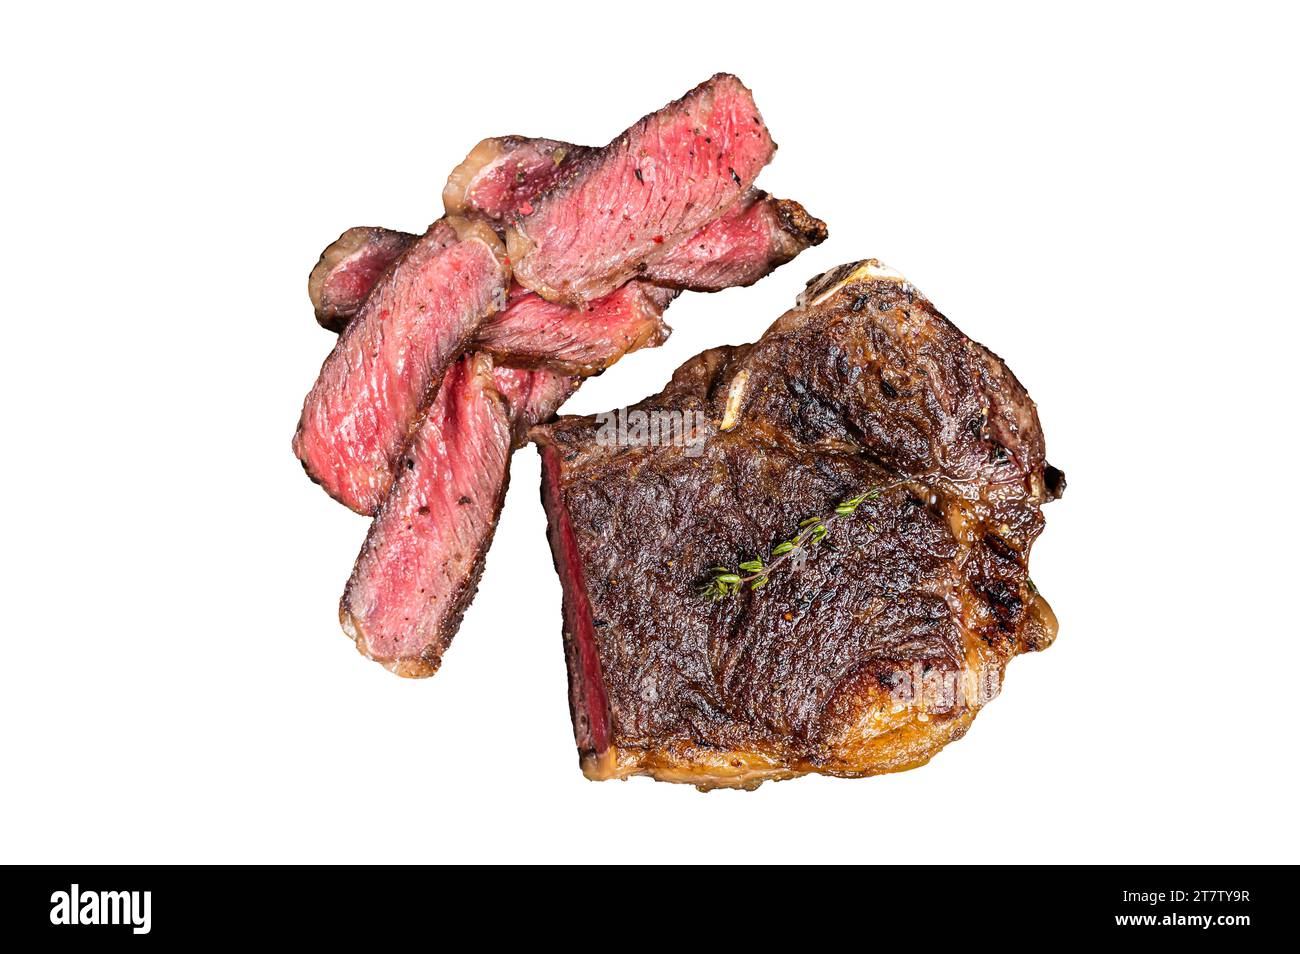 Steak de viande de bœuf Wagyu New York en tranches rôties ou steak striploin dans un plateau en acier avec des herbes. Isolé, fond blanc Banque D'Images